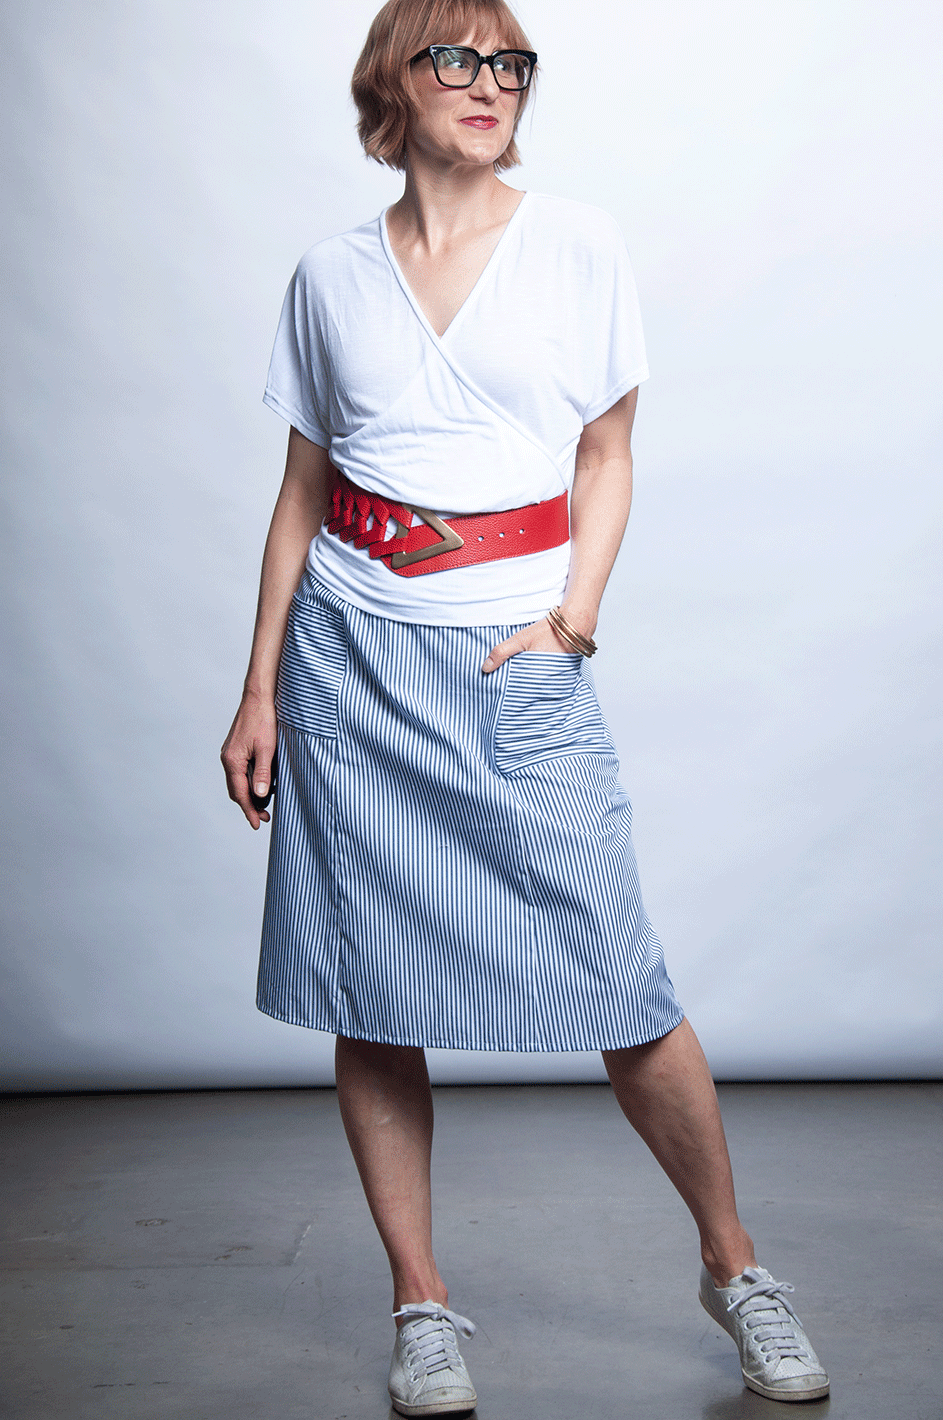 Sixer Skirt - Crisp Stripe